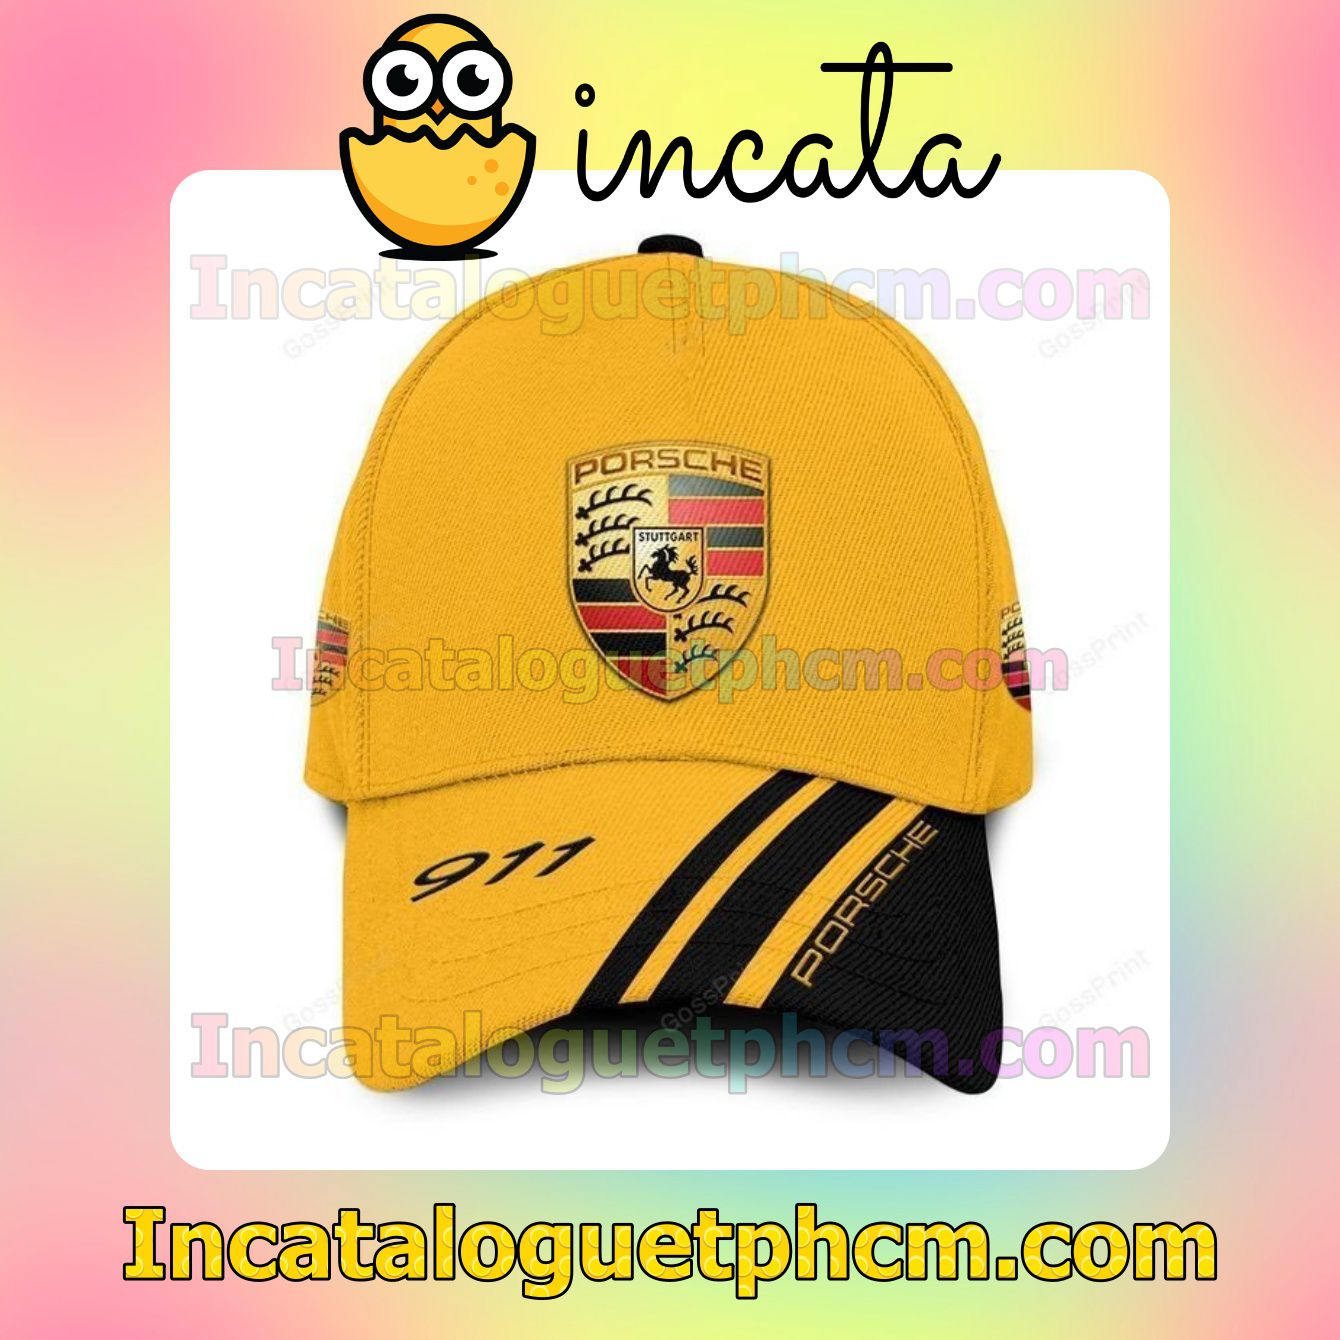 Unique Porsche 911 Yellow Classic Hat Caps Gift For Men